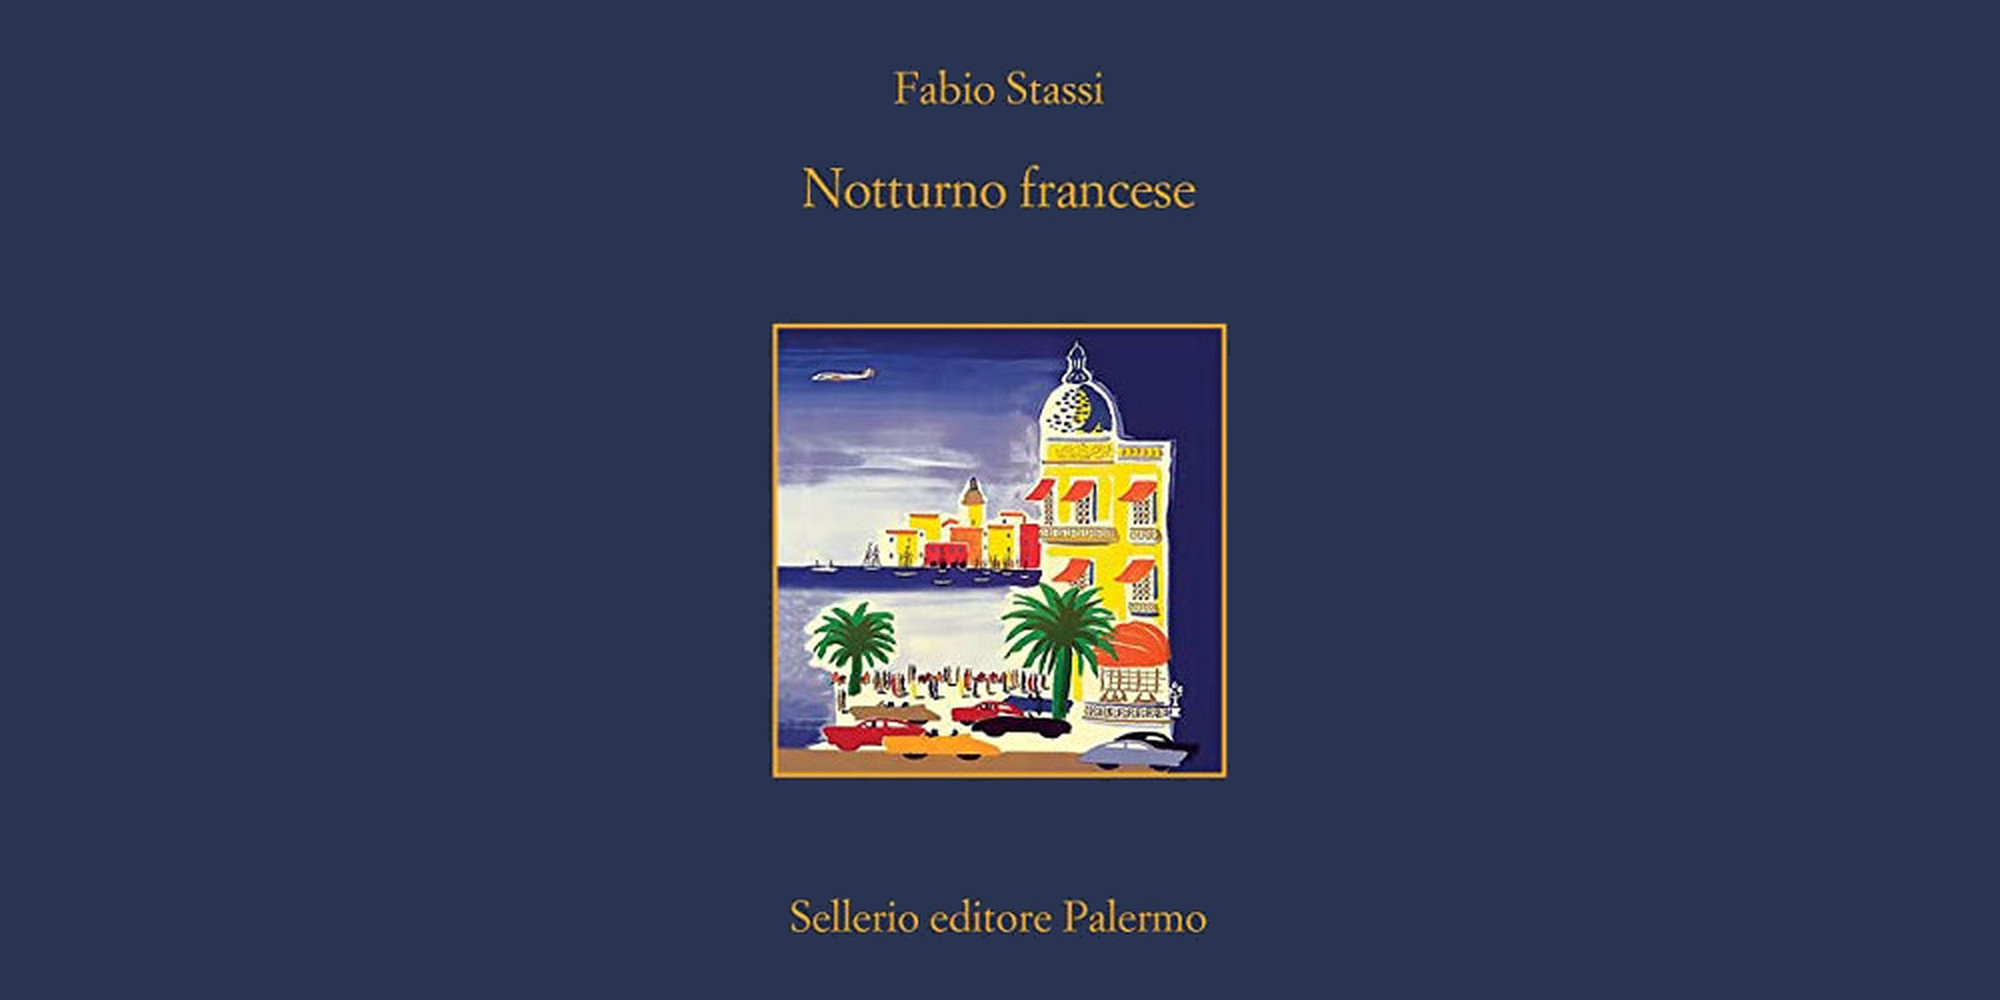 Notturno francese, la recensione di Maila Cavaliere del nuovo romanzo di Fabio Stassi pubblicato da Sellerio.